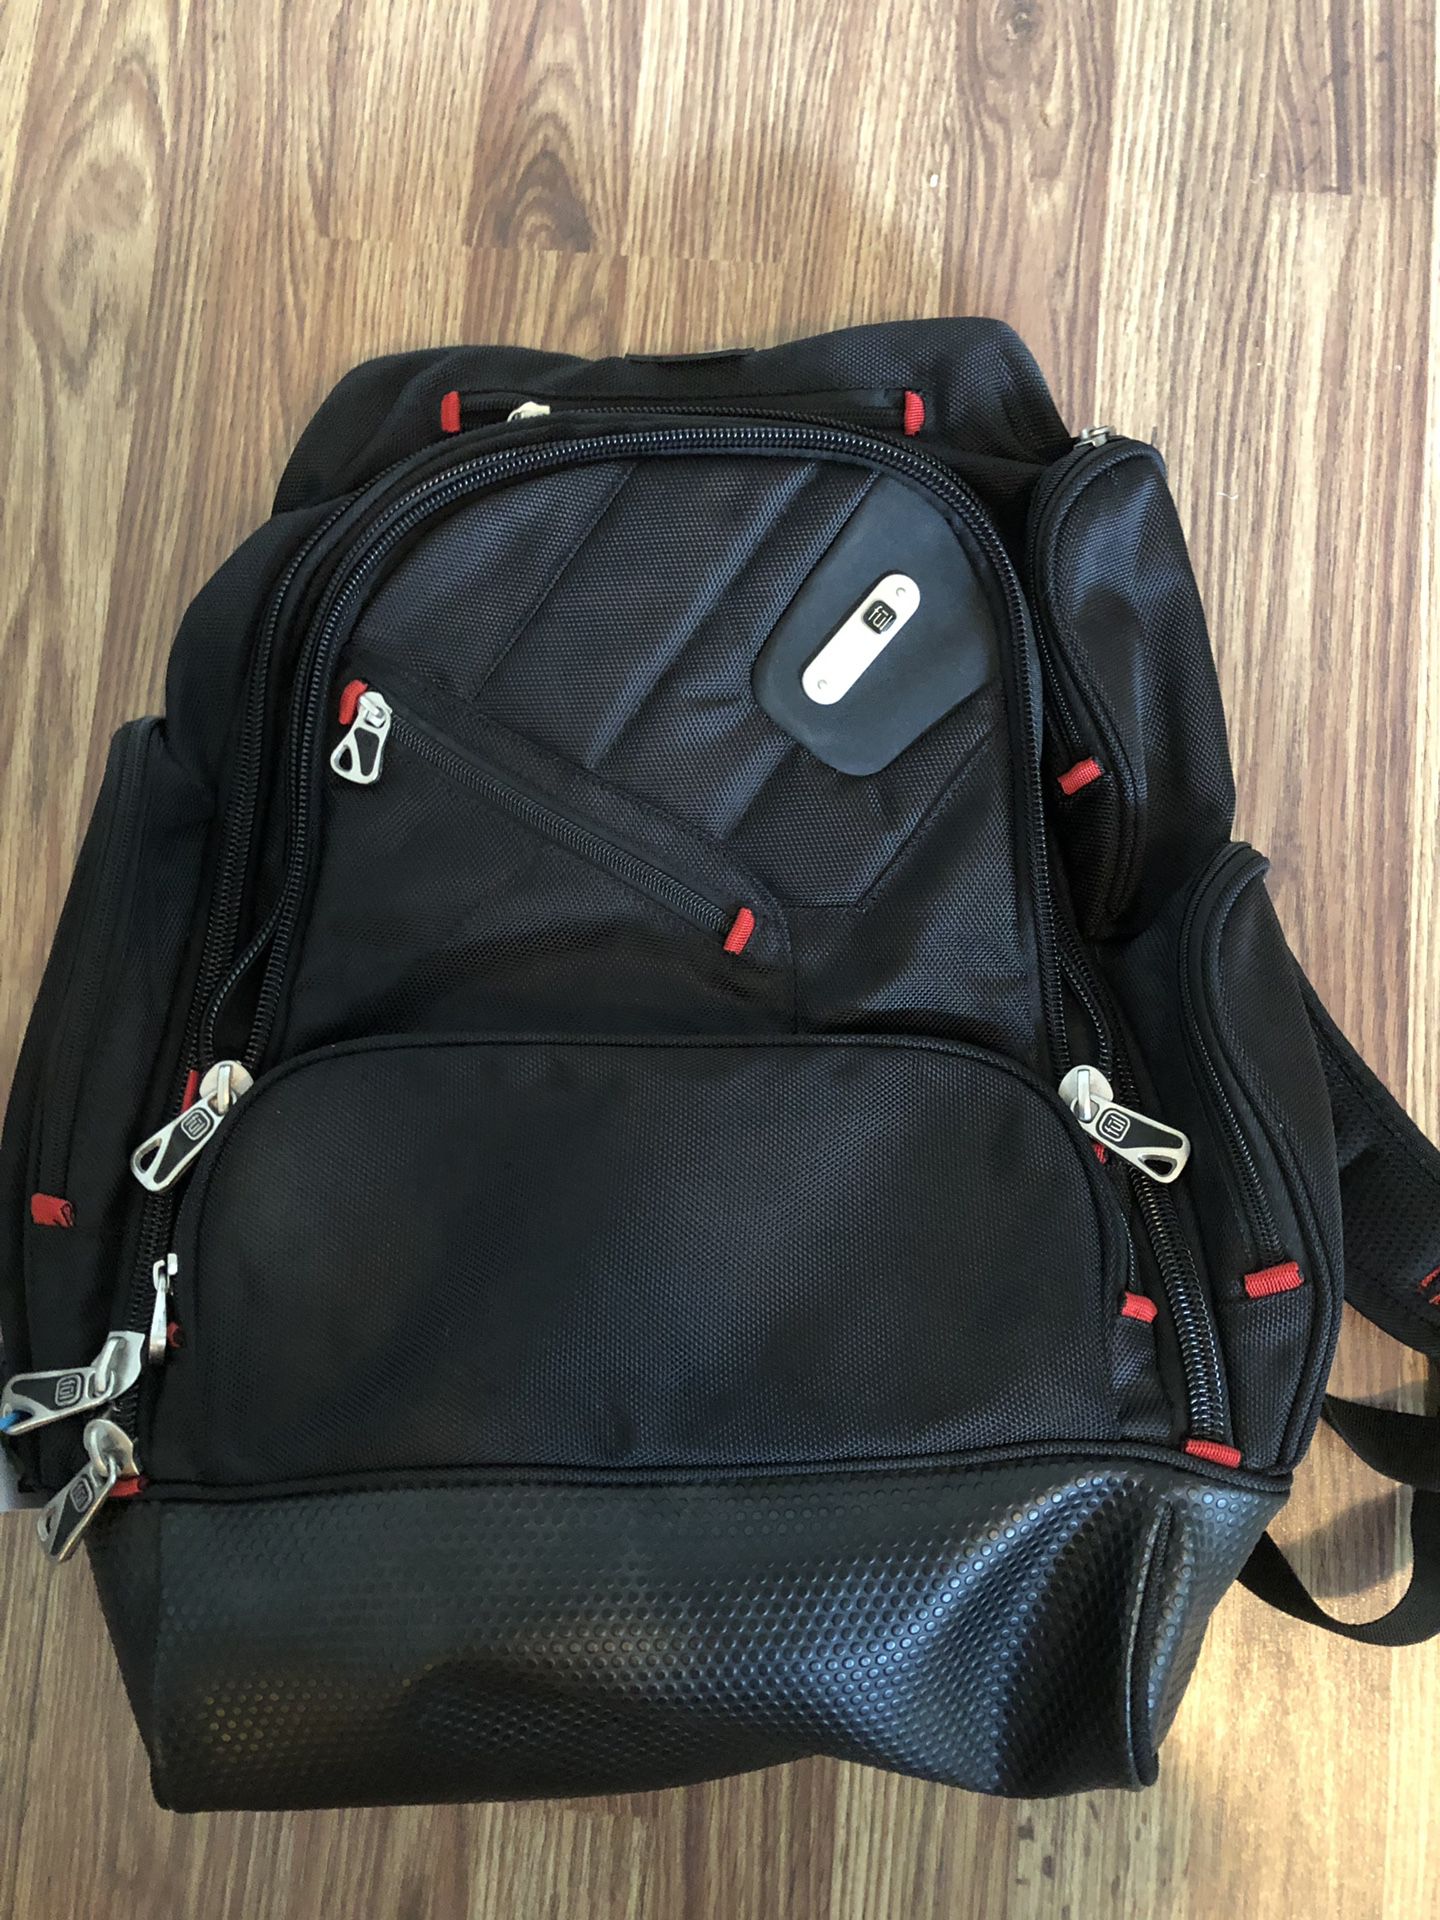 Ful backpack